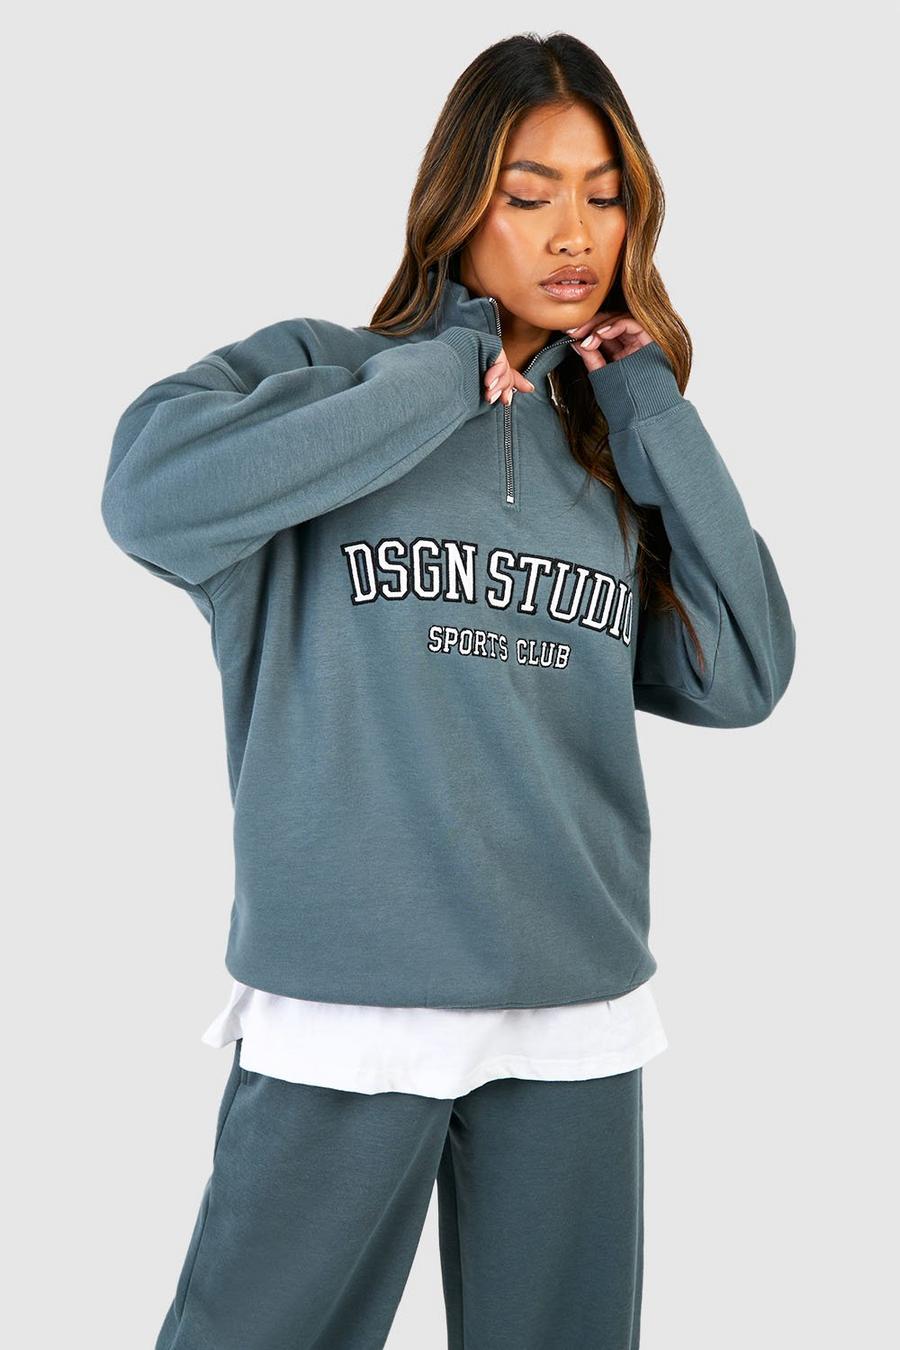 Oversize Sweatshirt mit Dsgn Studio Applikation und halbem Reißverschluss, Sage